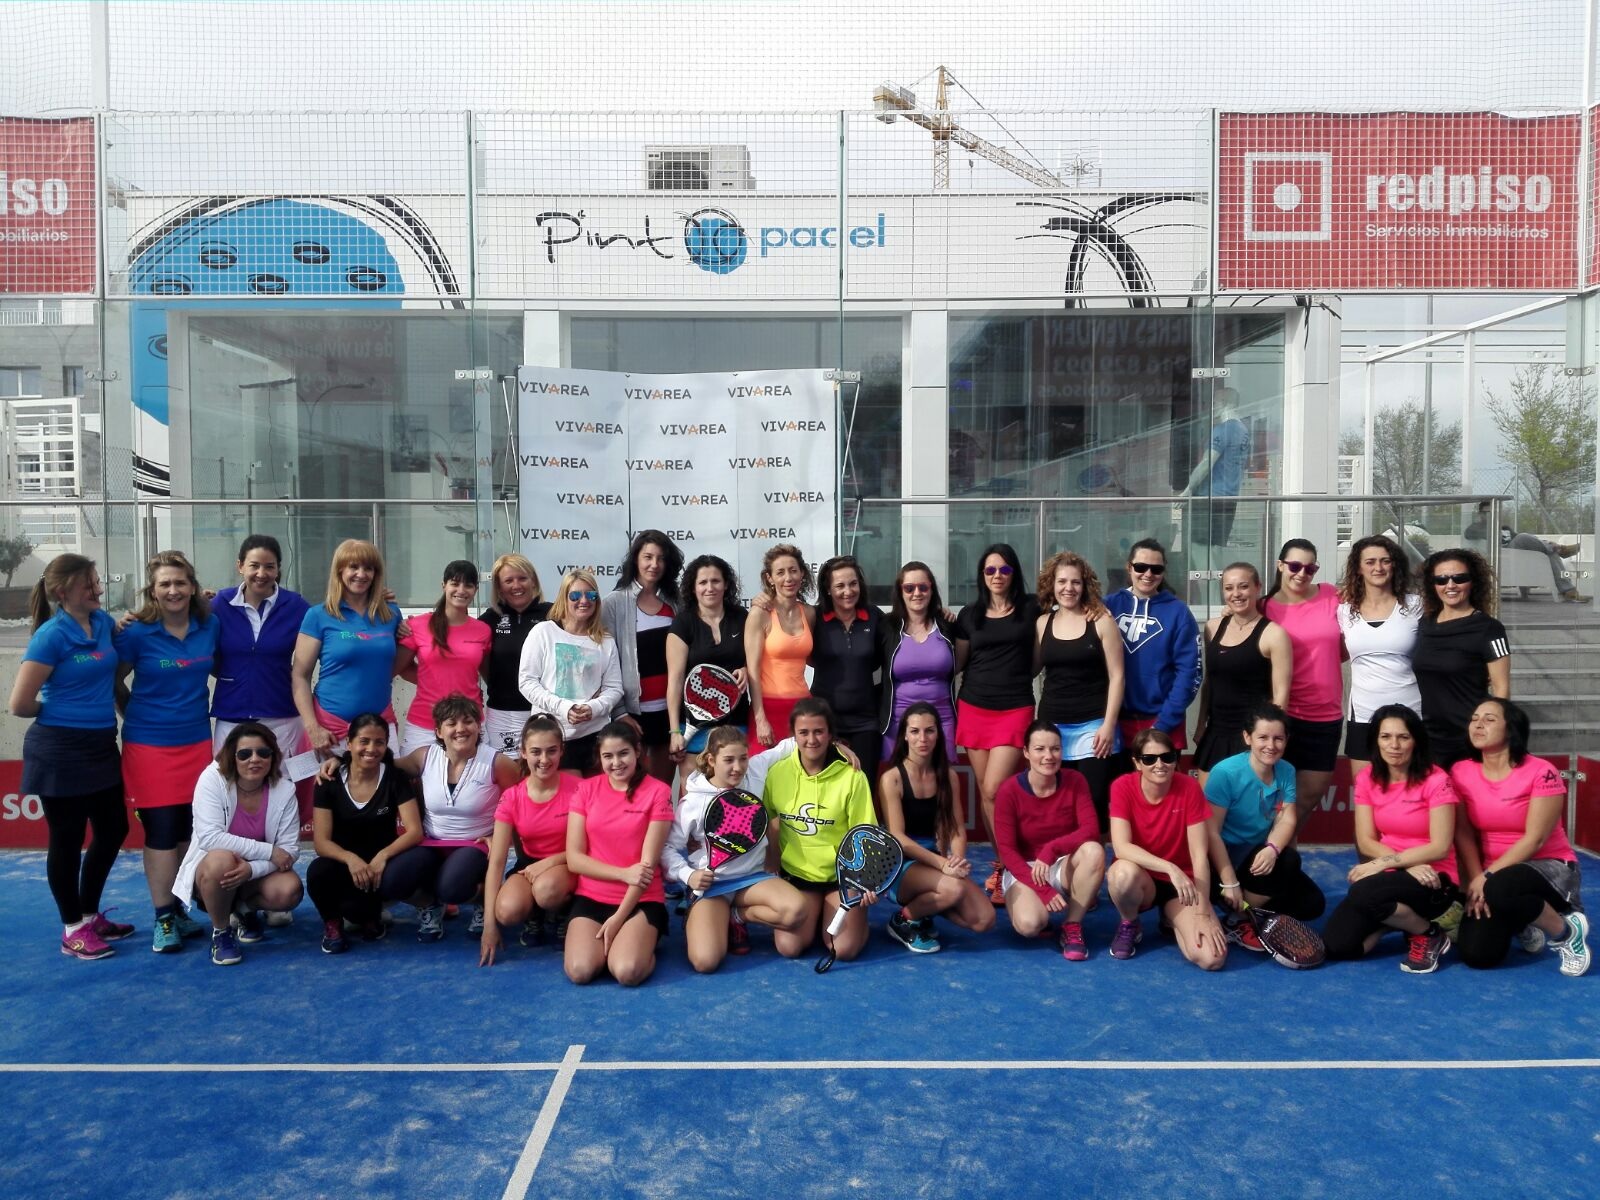 El Club PintoPádel organiza un torneo mixto benéfico el próximo 22 de abril